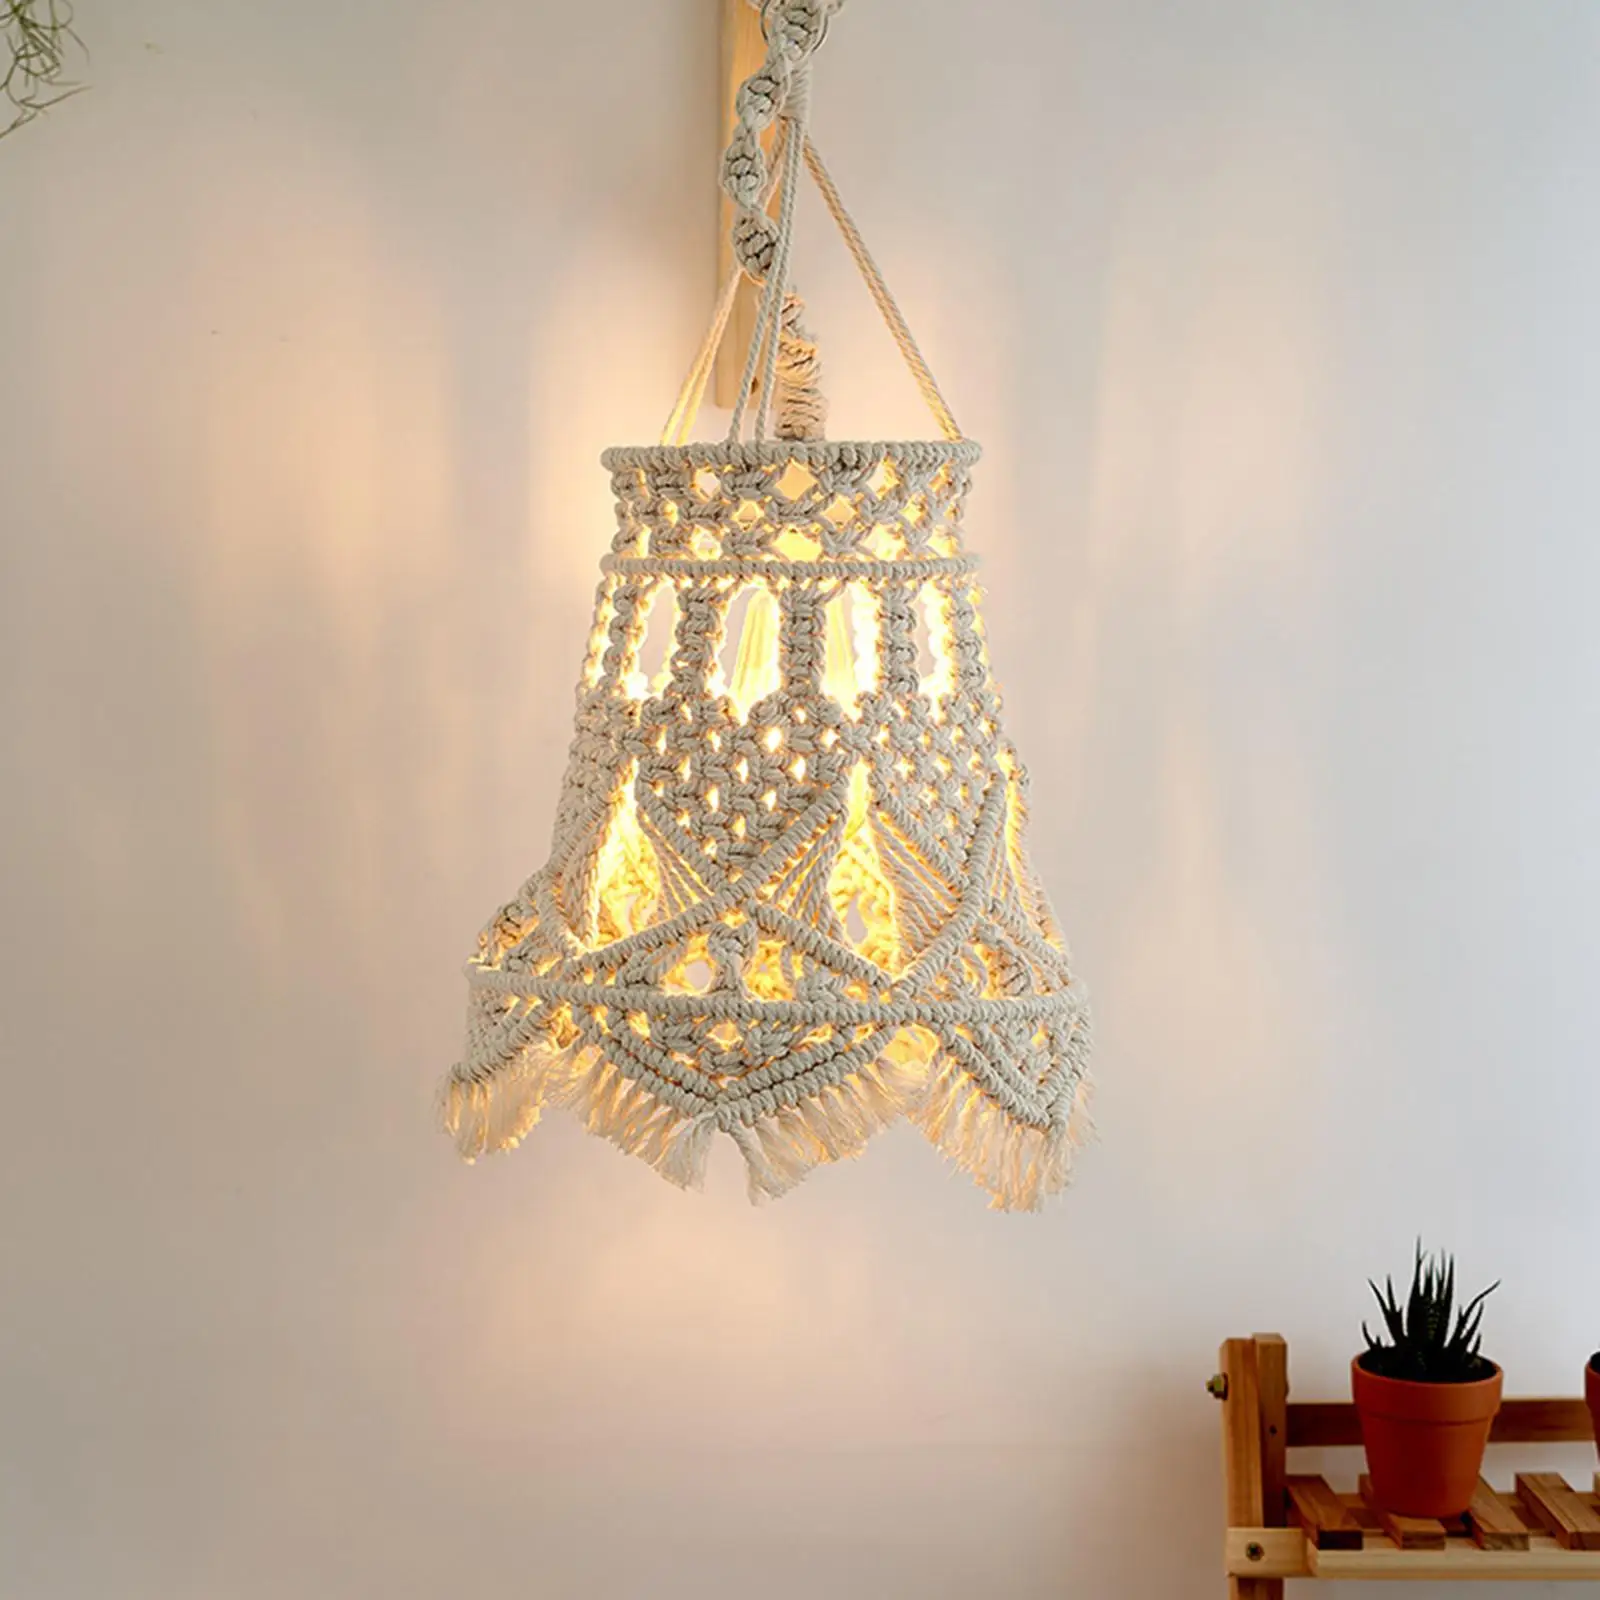 Macrame Tassel Lamp Shade Hand Woven Pendant Light Cover for Living Room